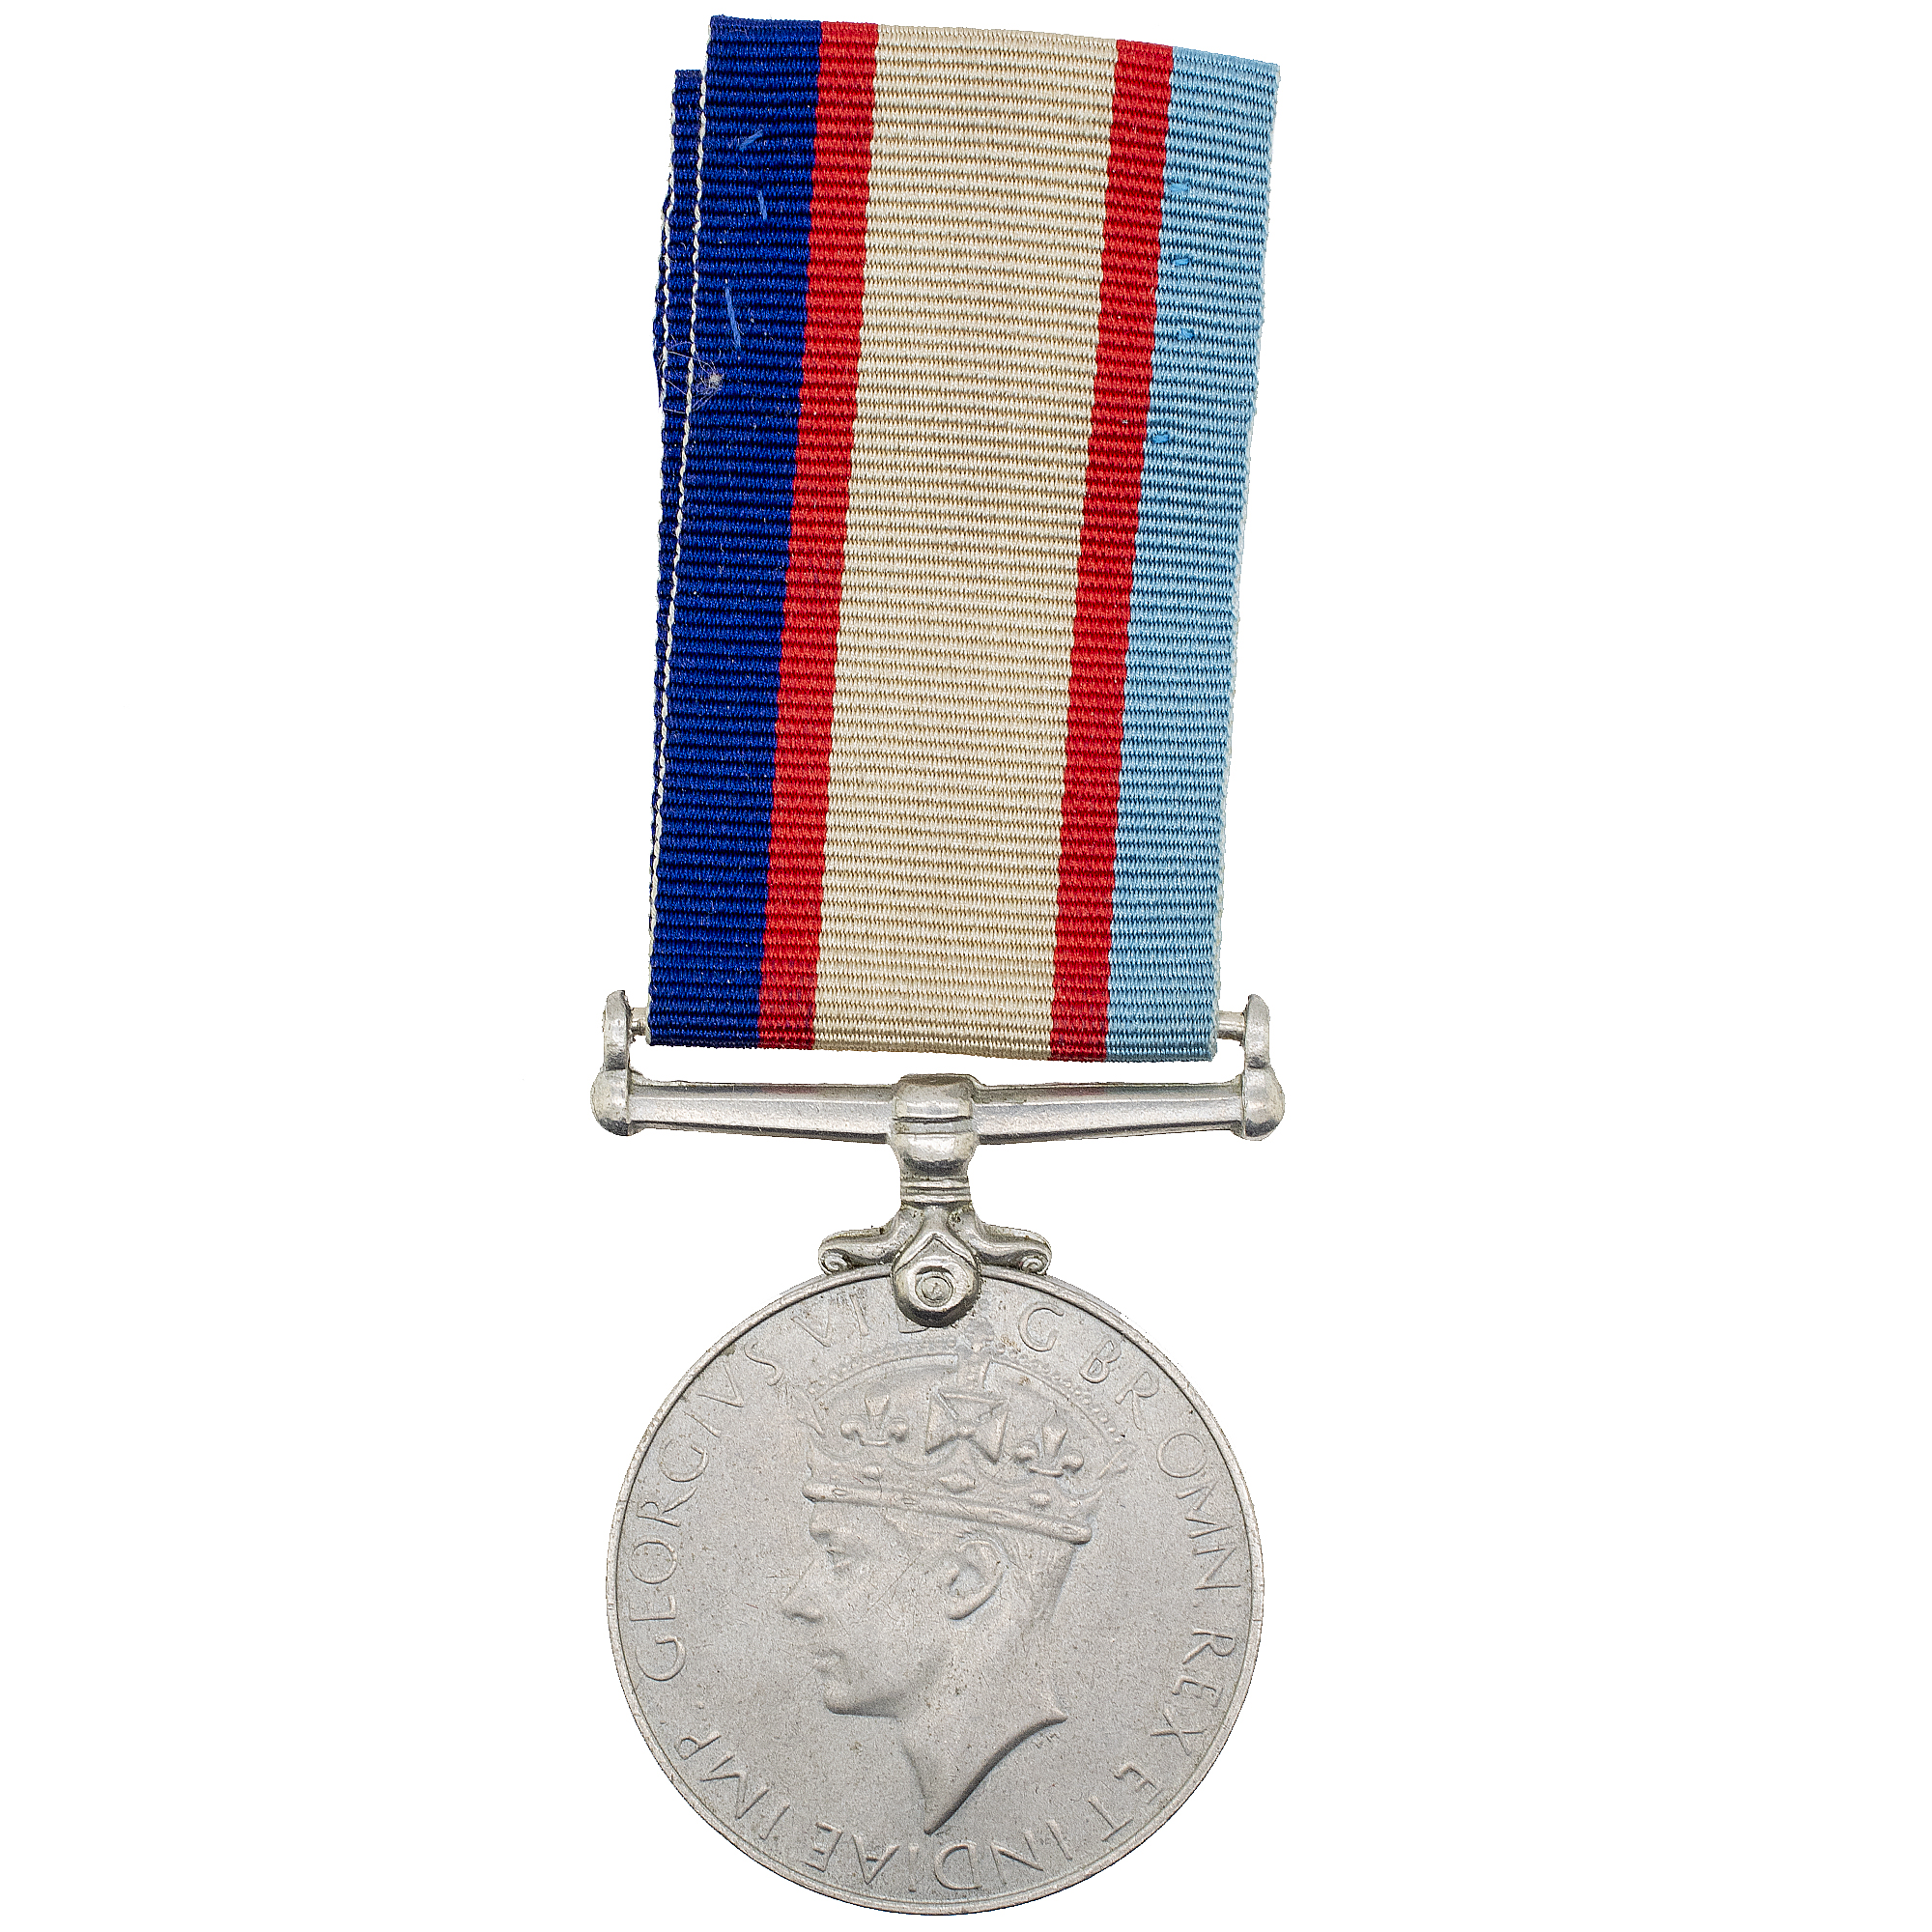 Великобритания. Медаль "За службу Австралии" 1939-1945 гг.